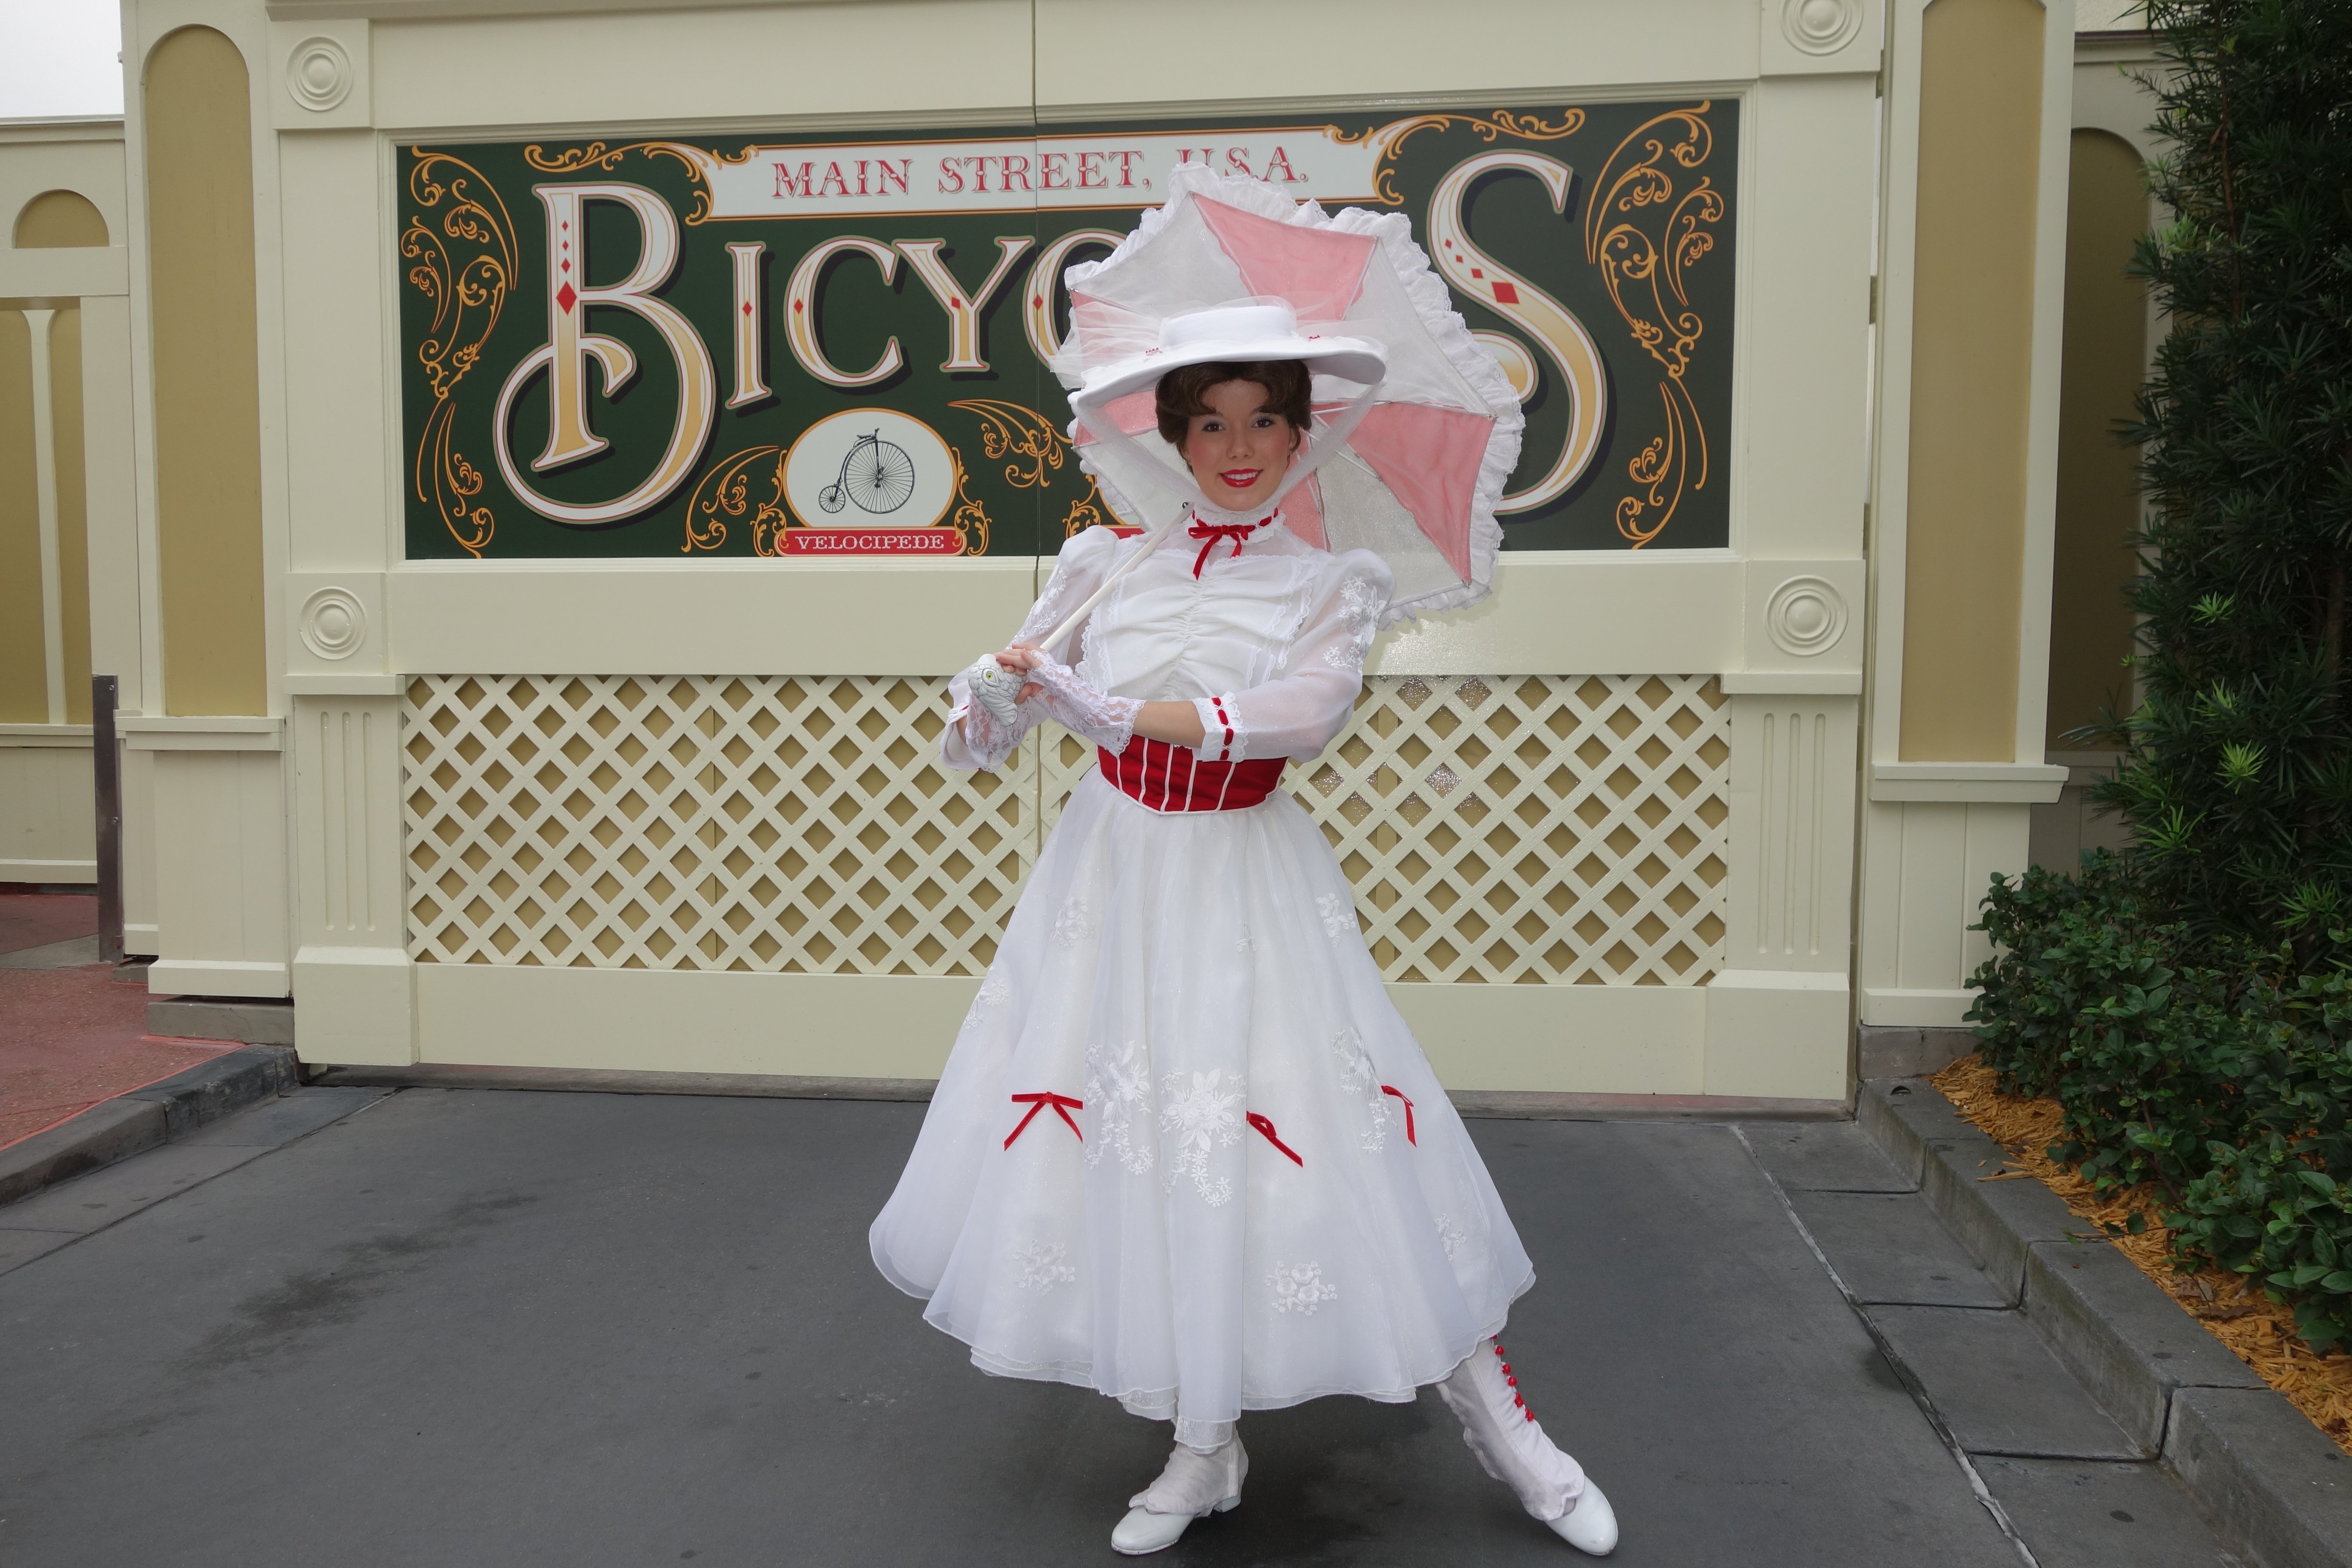 Mary Poppins Magic Kingdom 2012